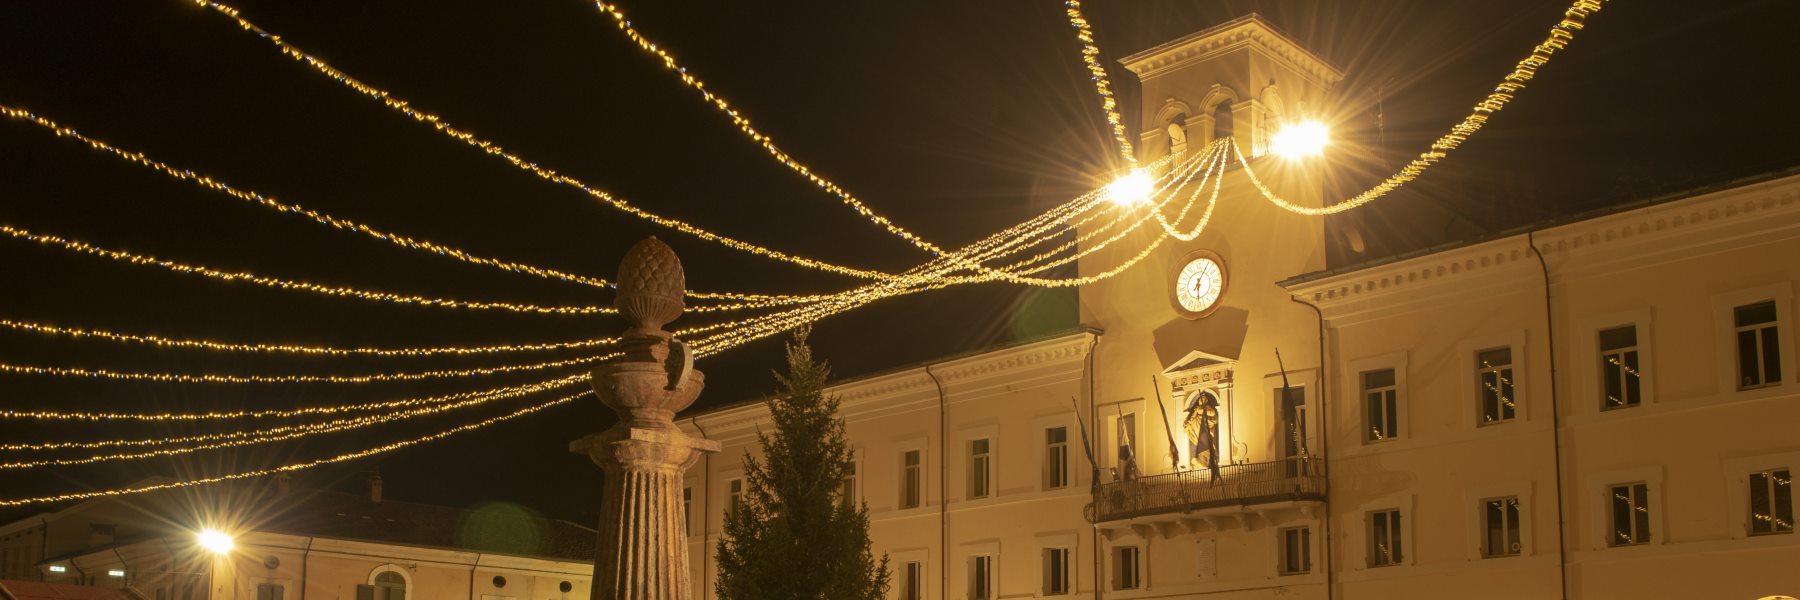 1 - Weihnachtsbeleuchtung auf der Piazza Garibaldi